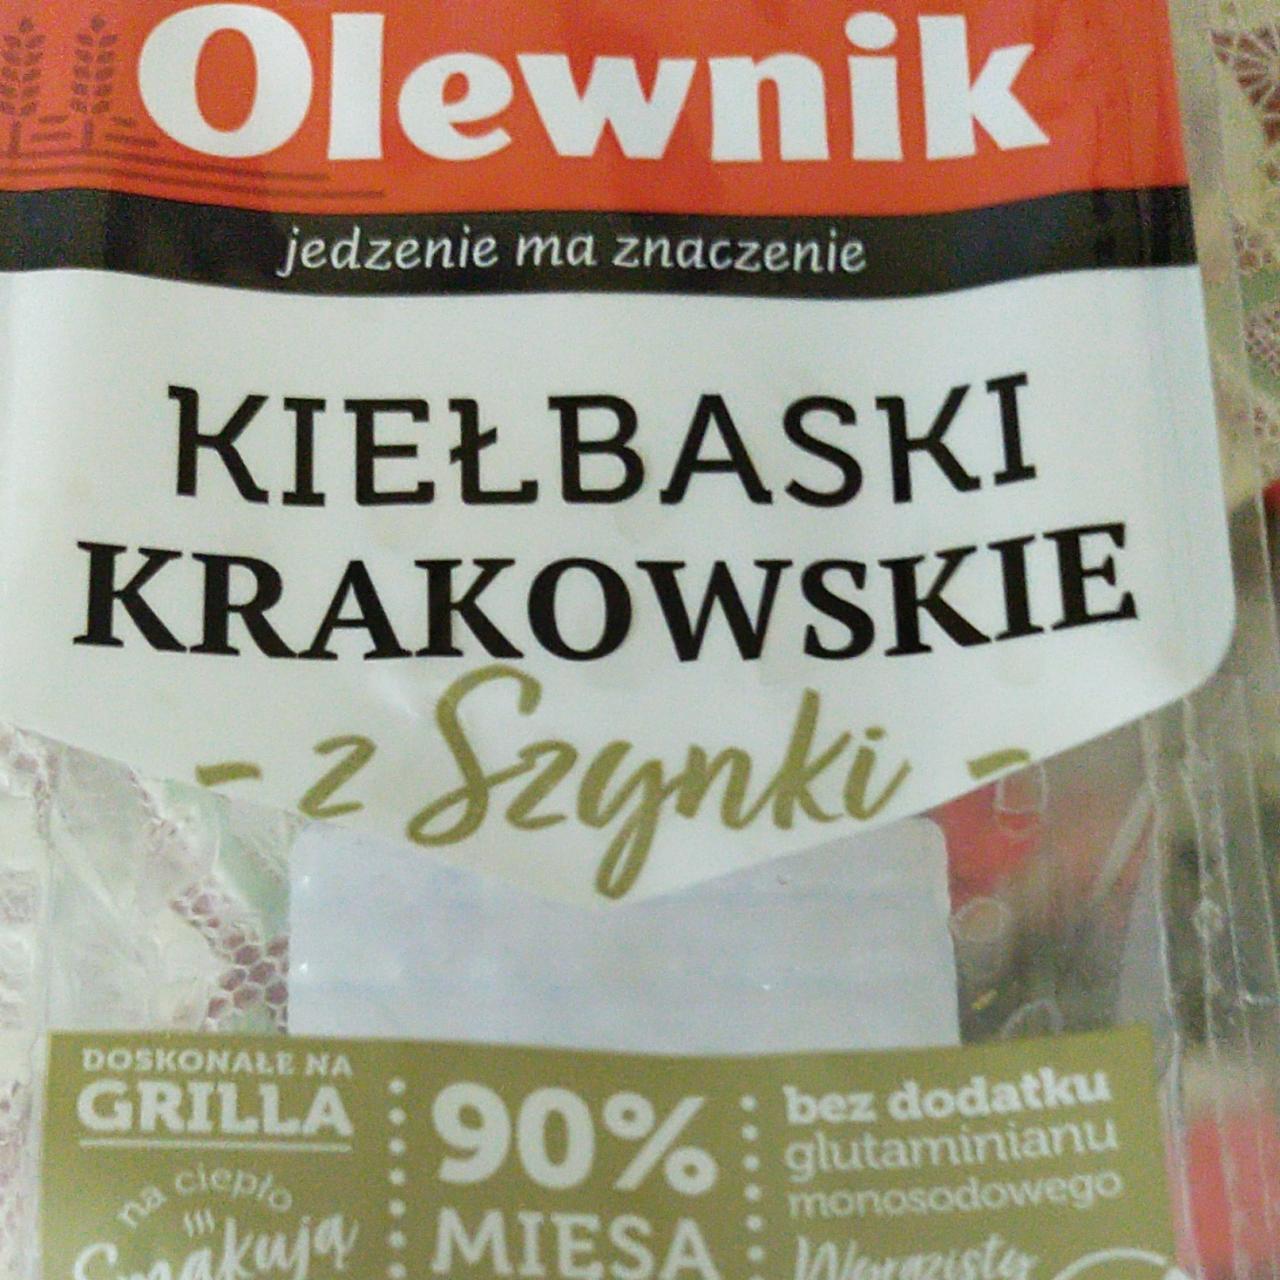 Zdjęcia - kiełbaski Krakowie z szynki olewnik